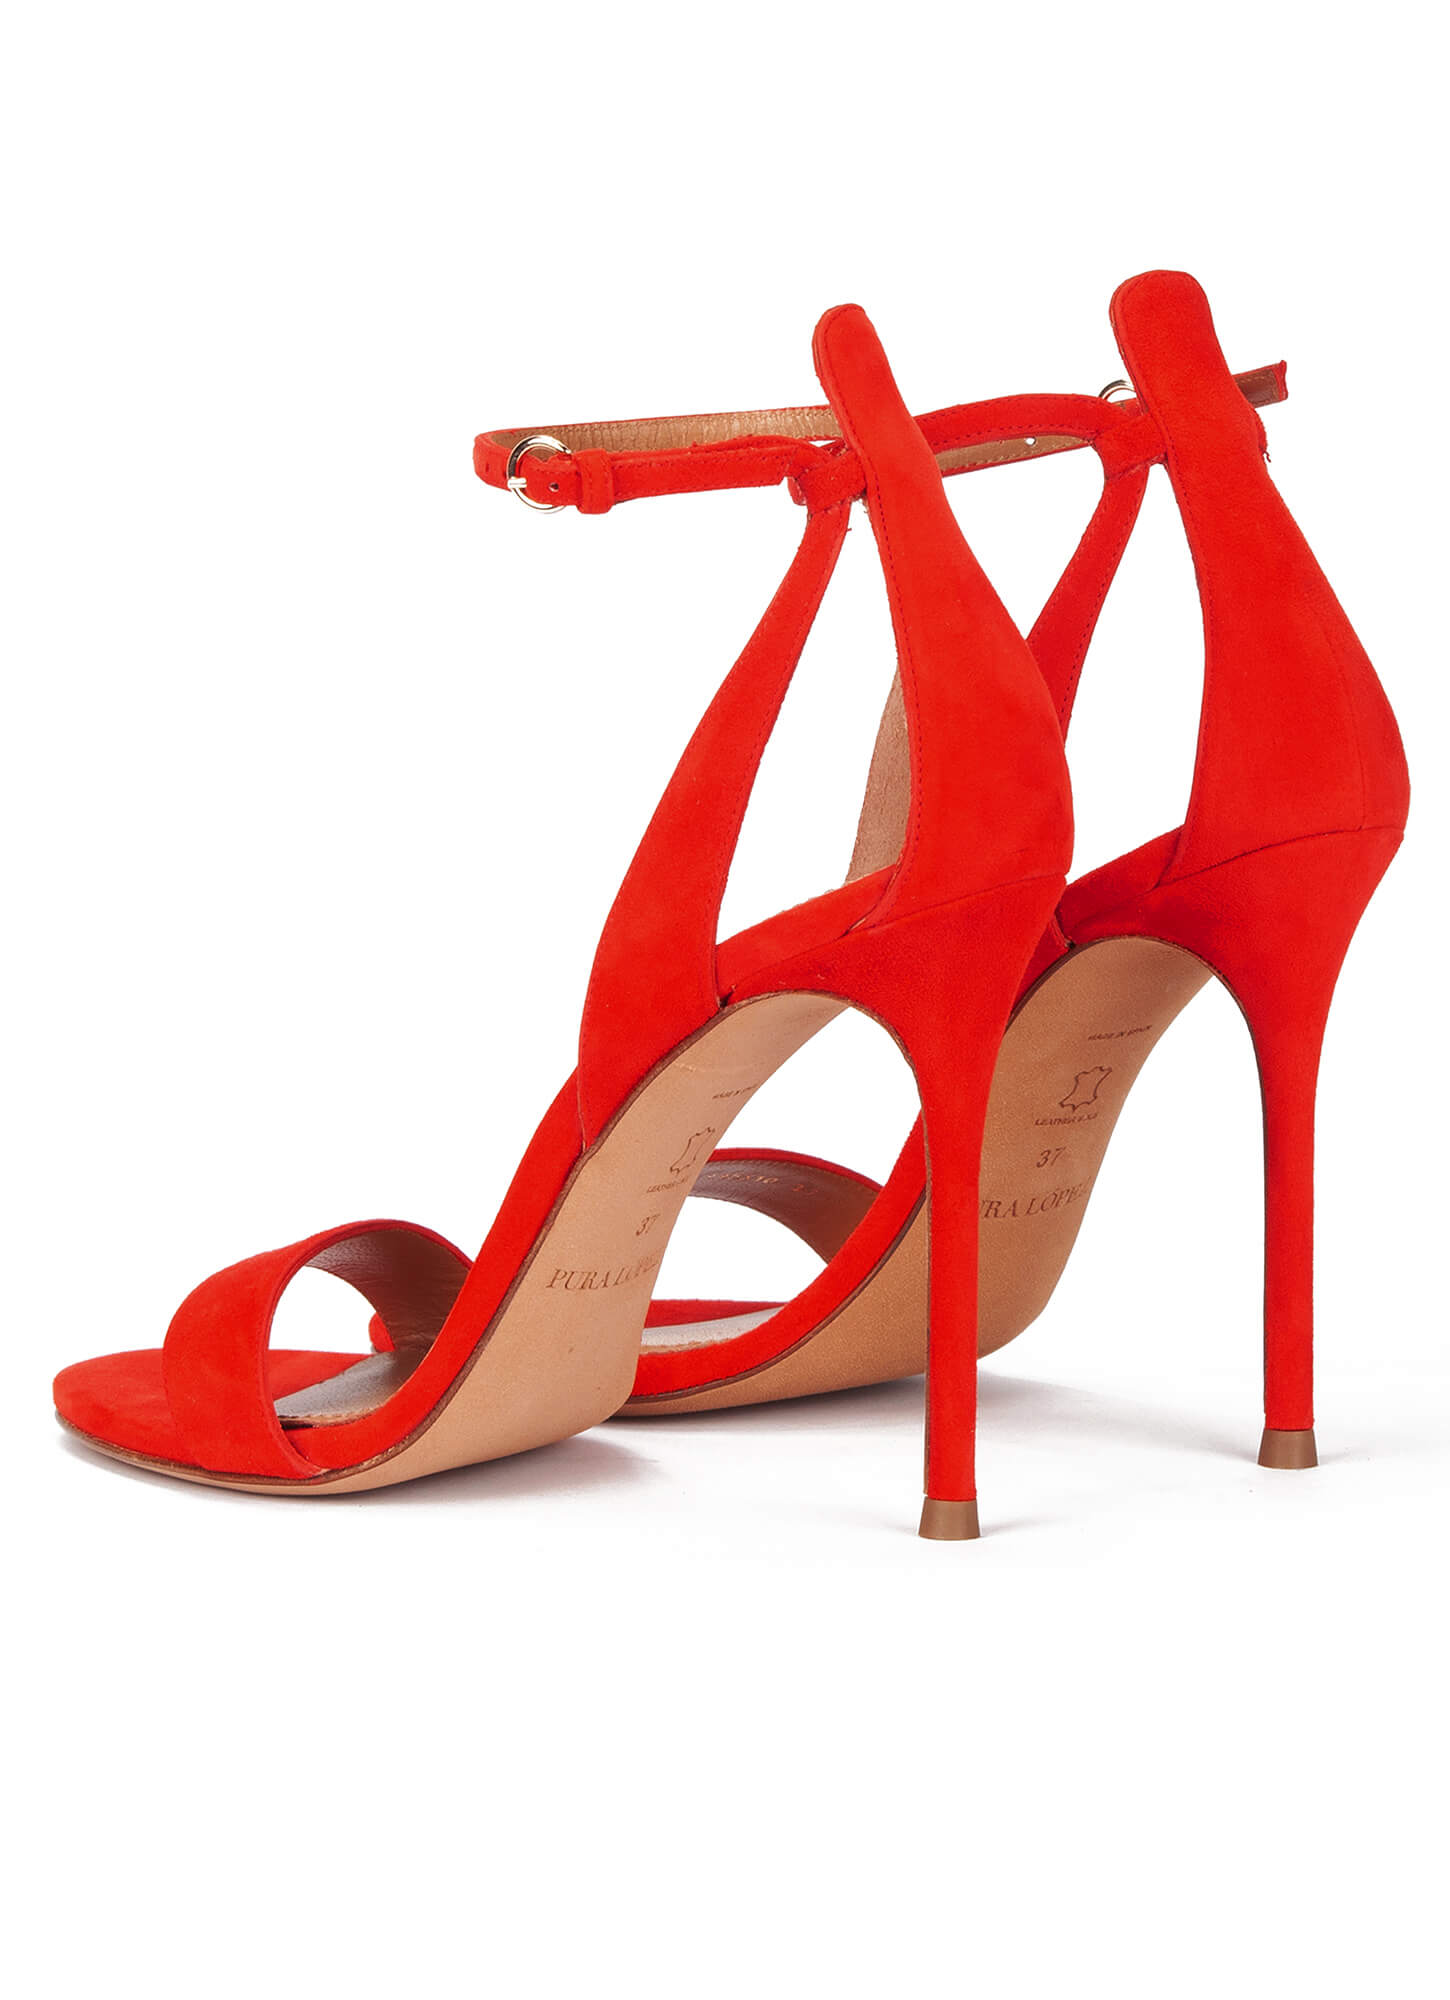 Buy Romu's Red high heels for women/Girls strap heels for women 5 INCH Red  Chunky Heels Sandals Fahsion Casual Block Heel Sandals fancy Red heel  sandals for women/Girls High Heeled Sandal at